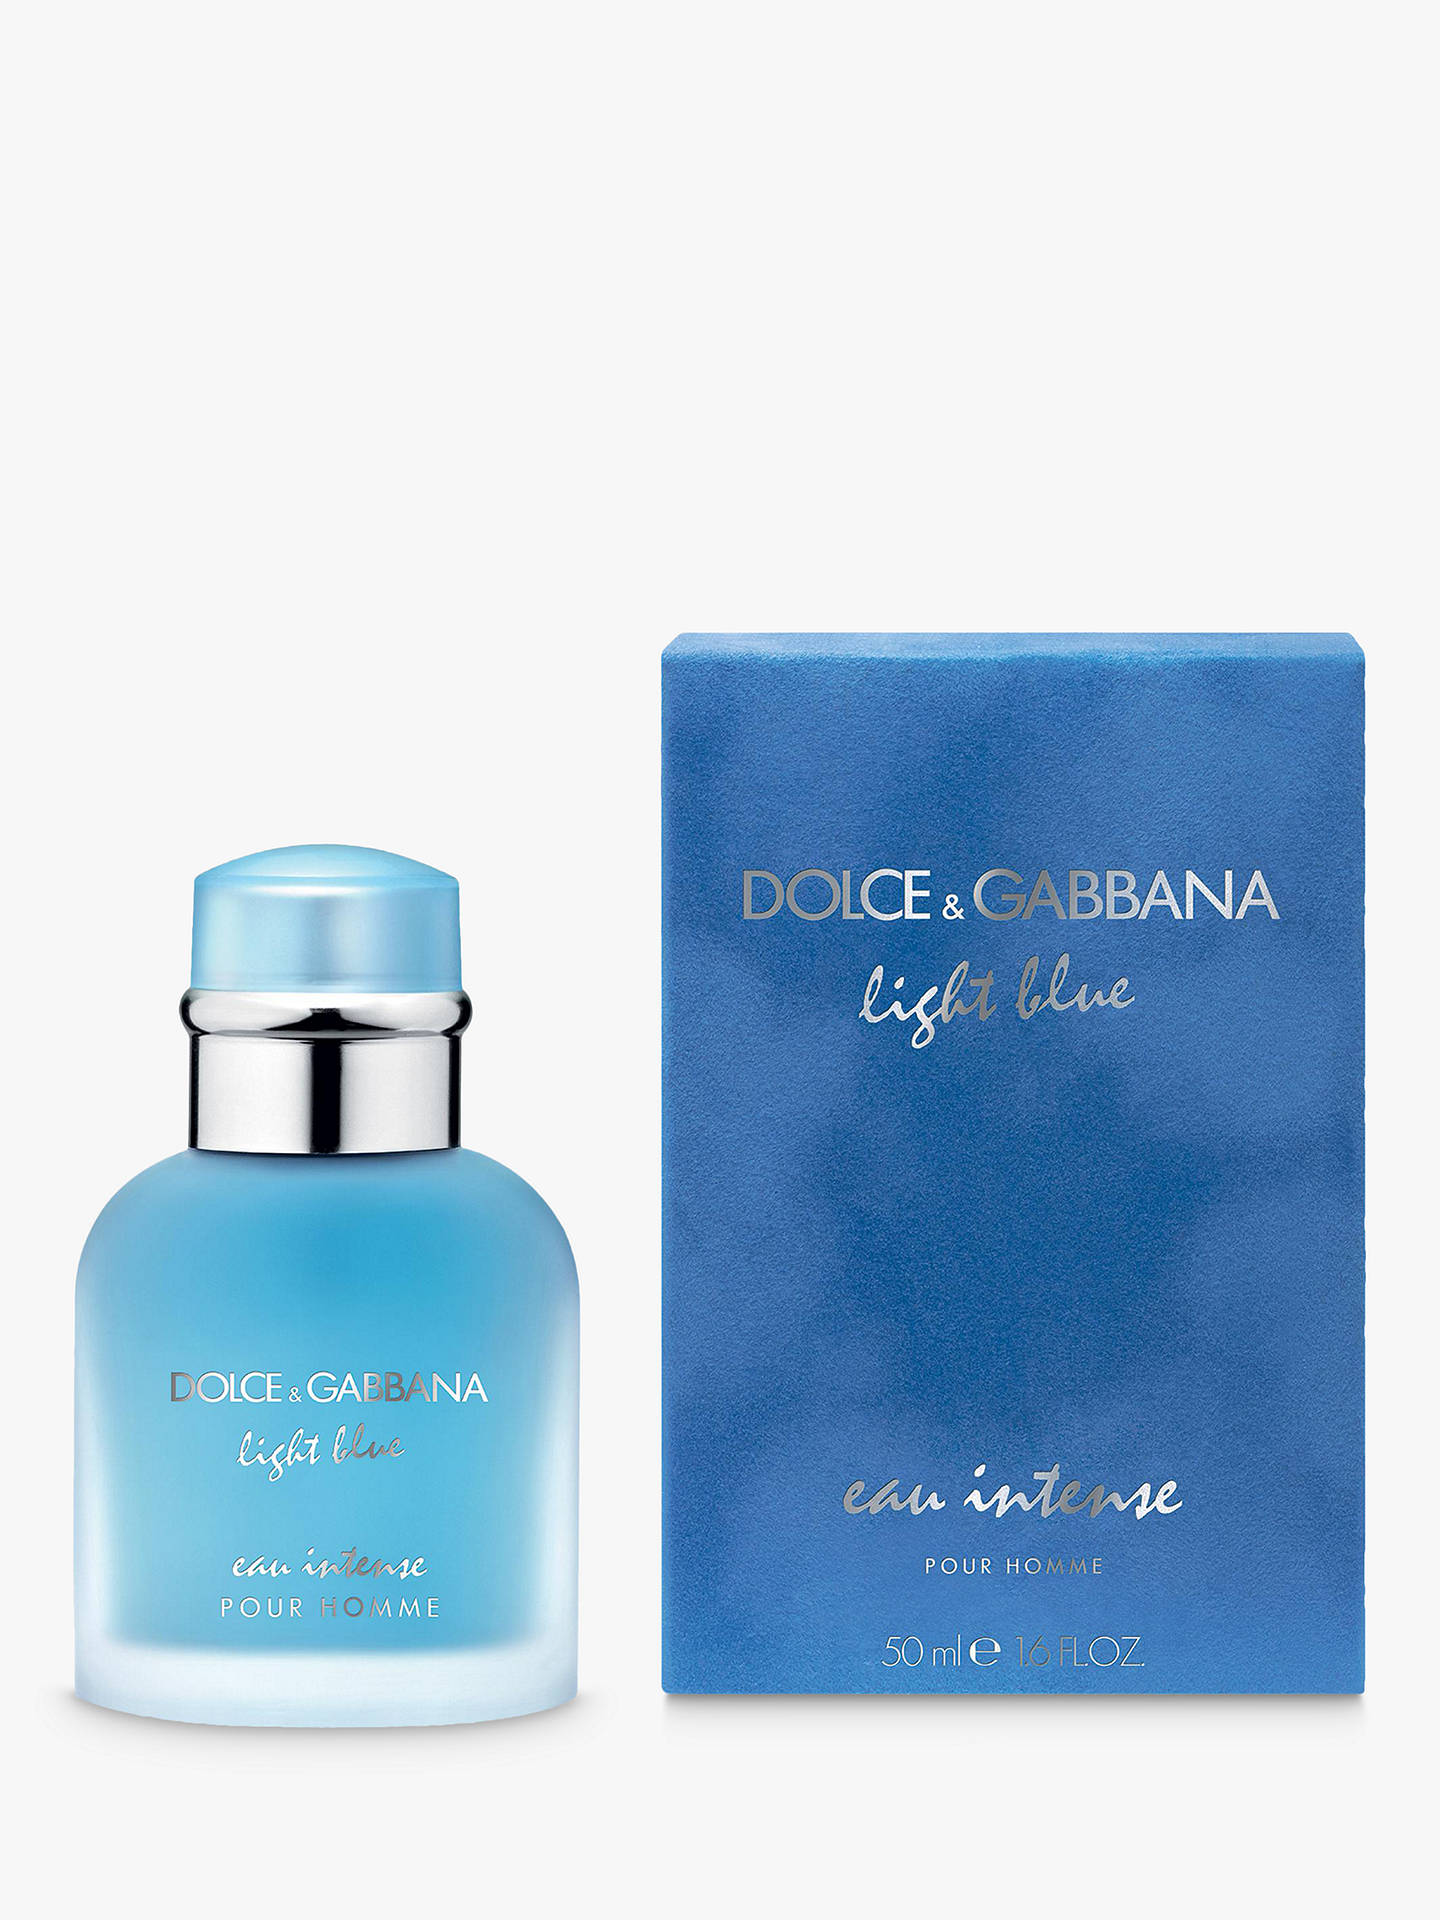 Dolce & Gabbana Light Blue Eau Intense Pour Homme Eau de